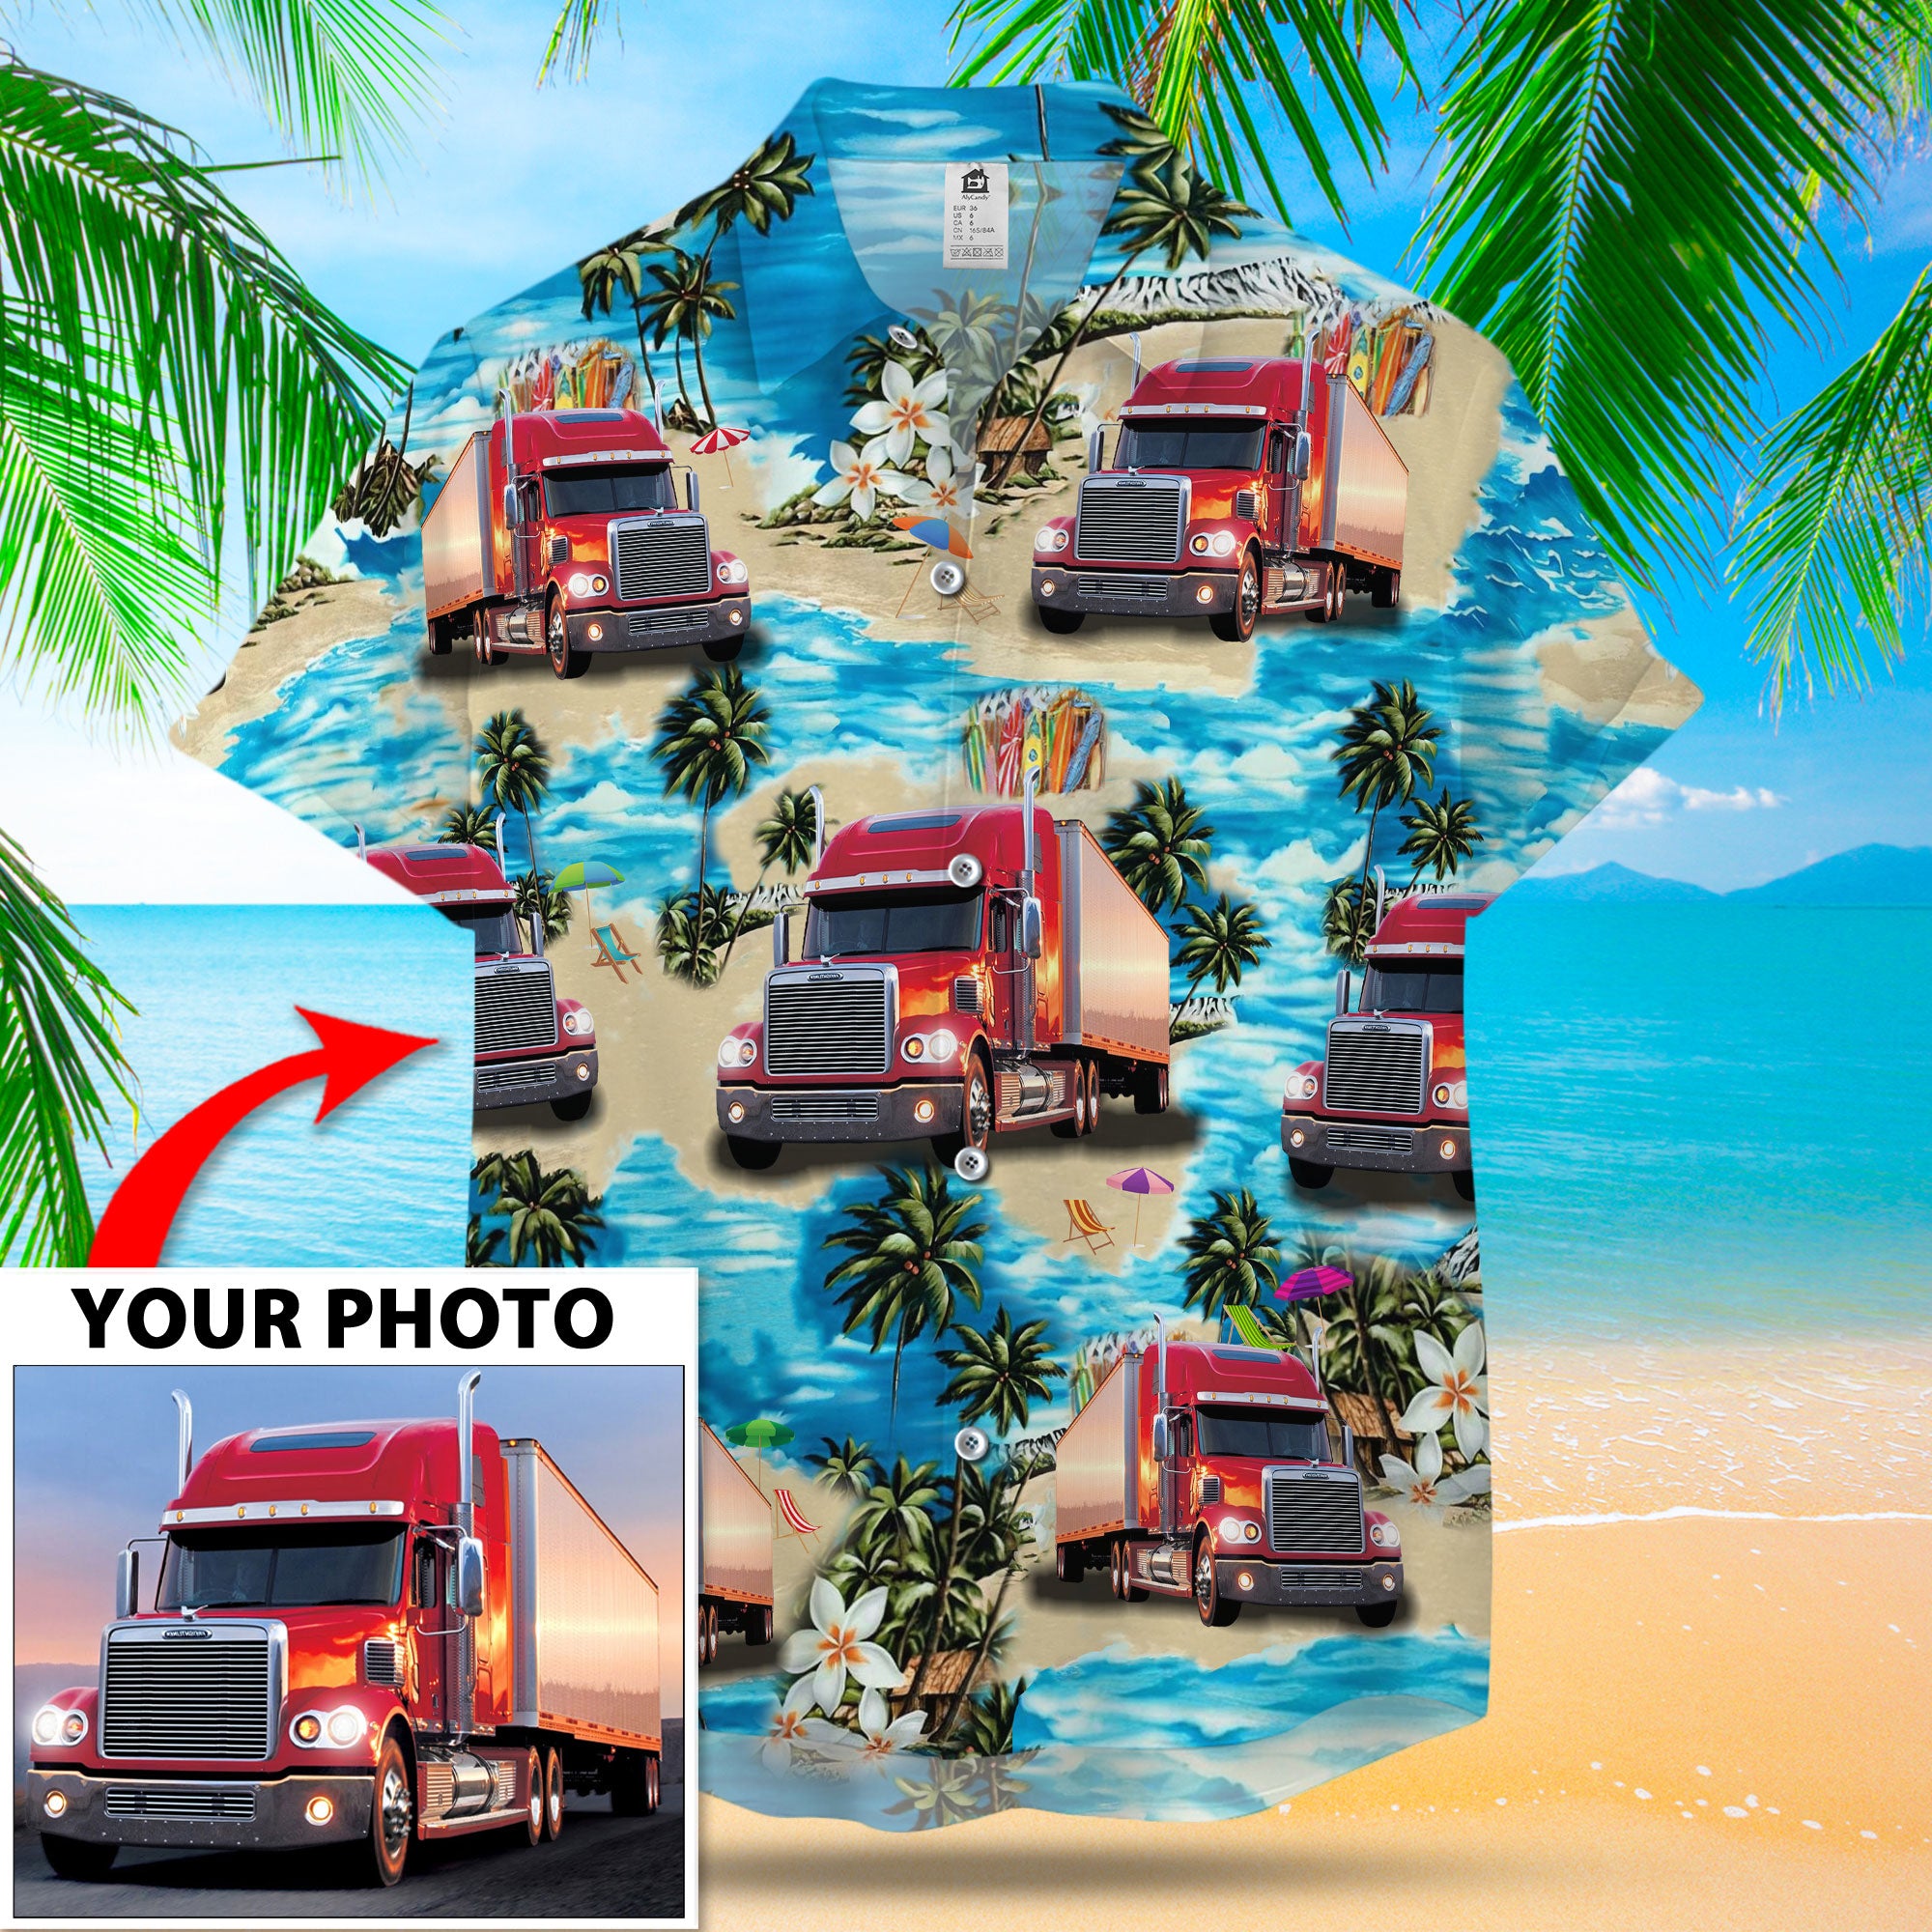 Custom Image Island Hawaiian Shirt